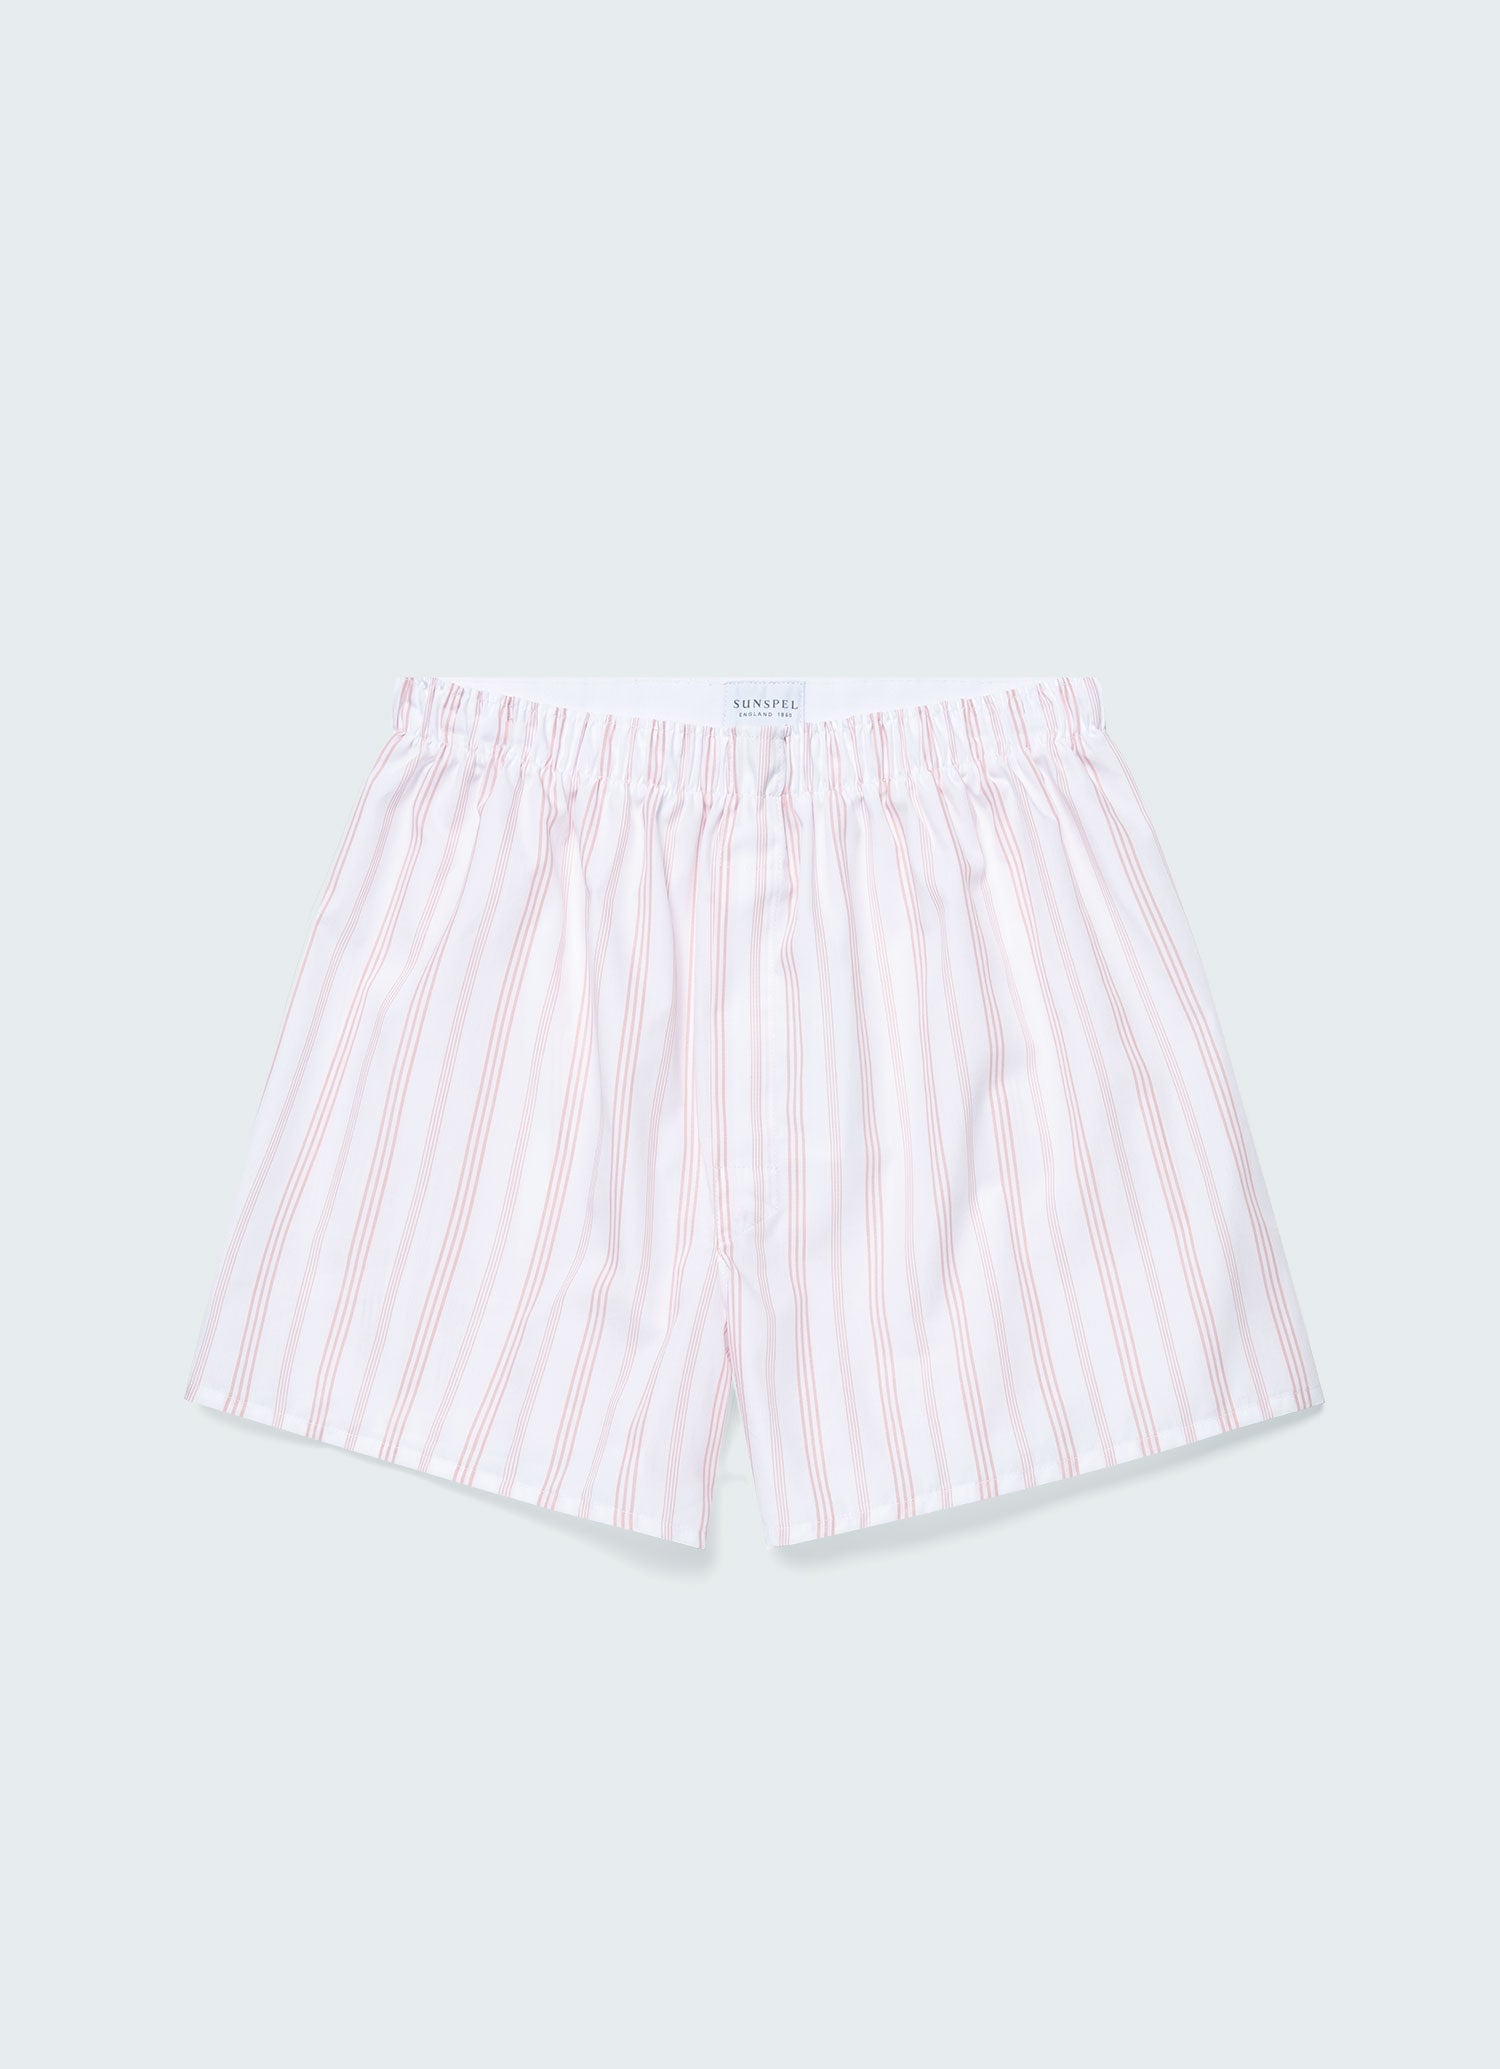 Pale Pink Boxer Shorts – Box Menswear